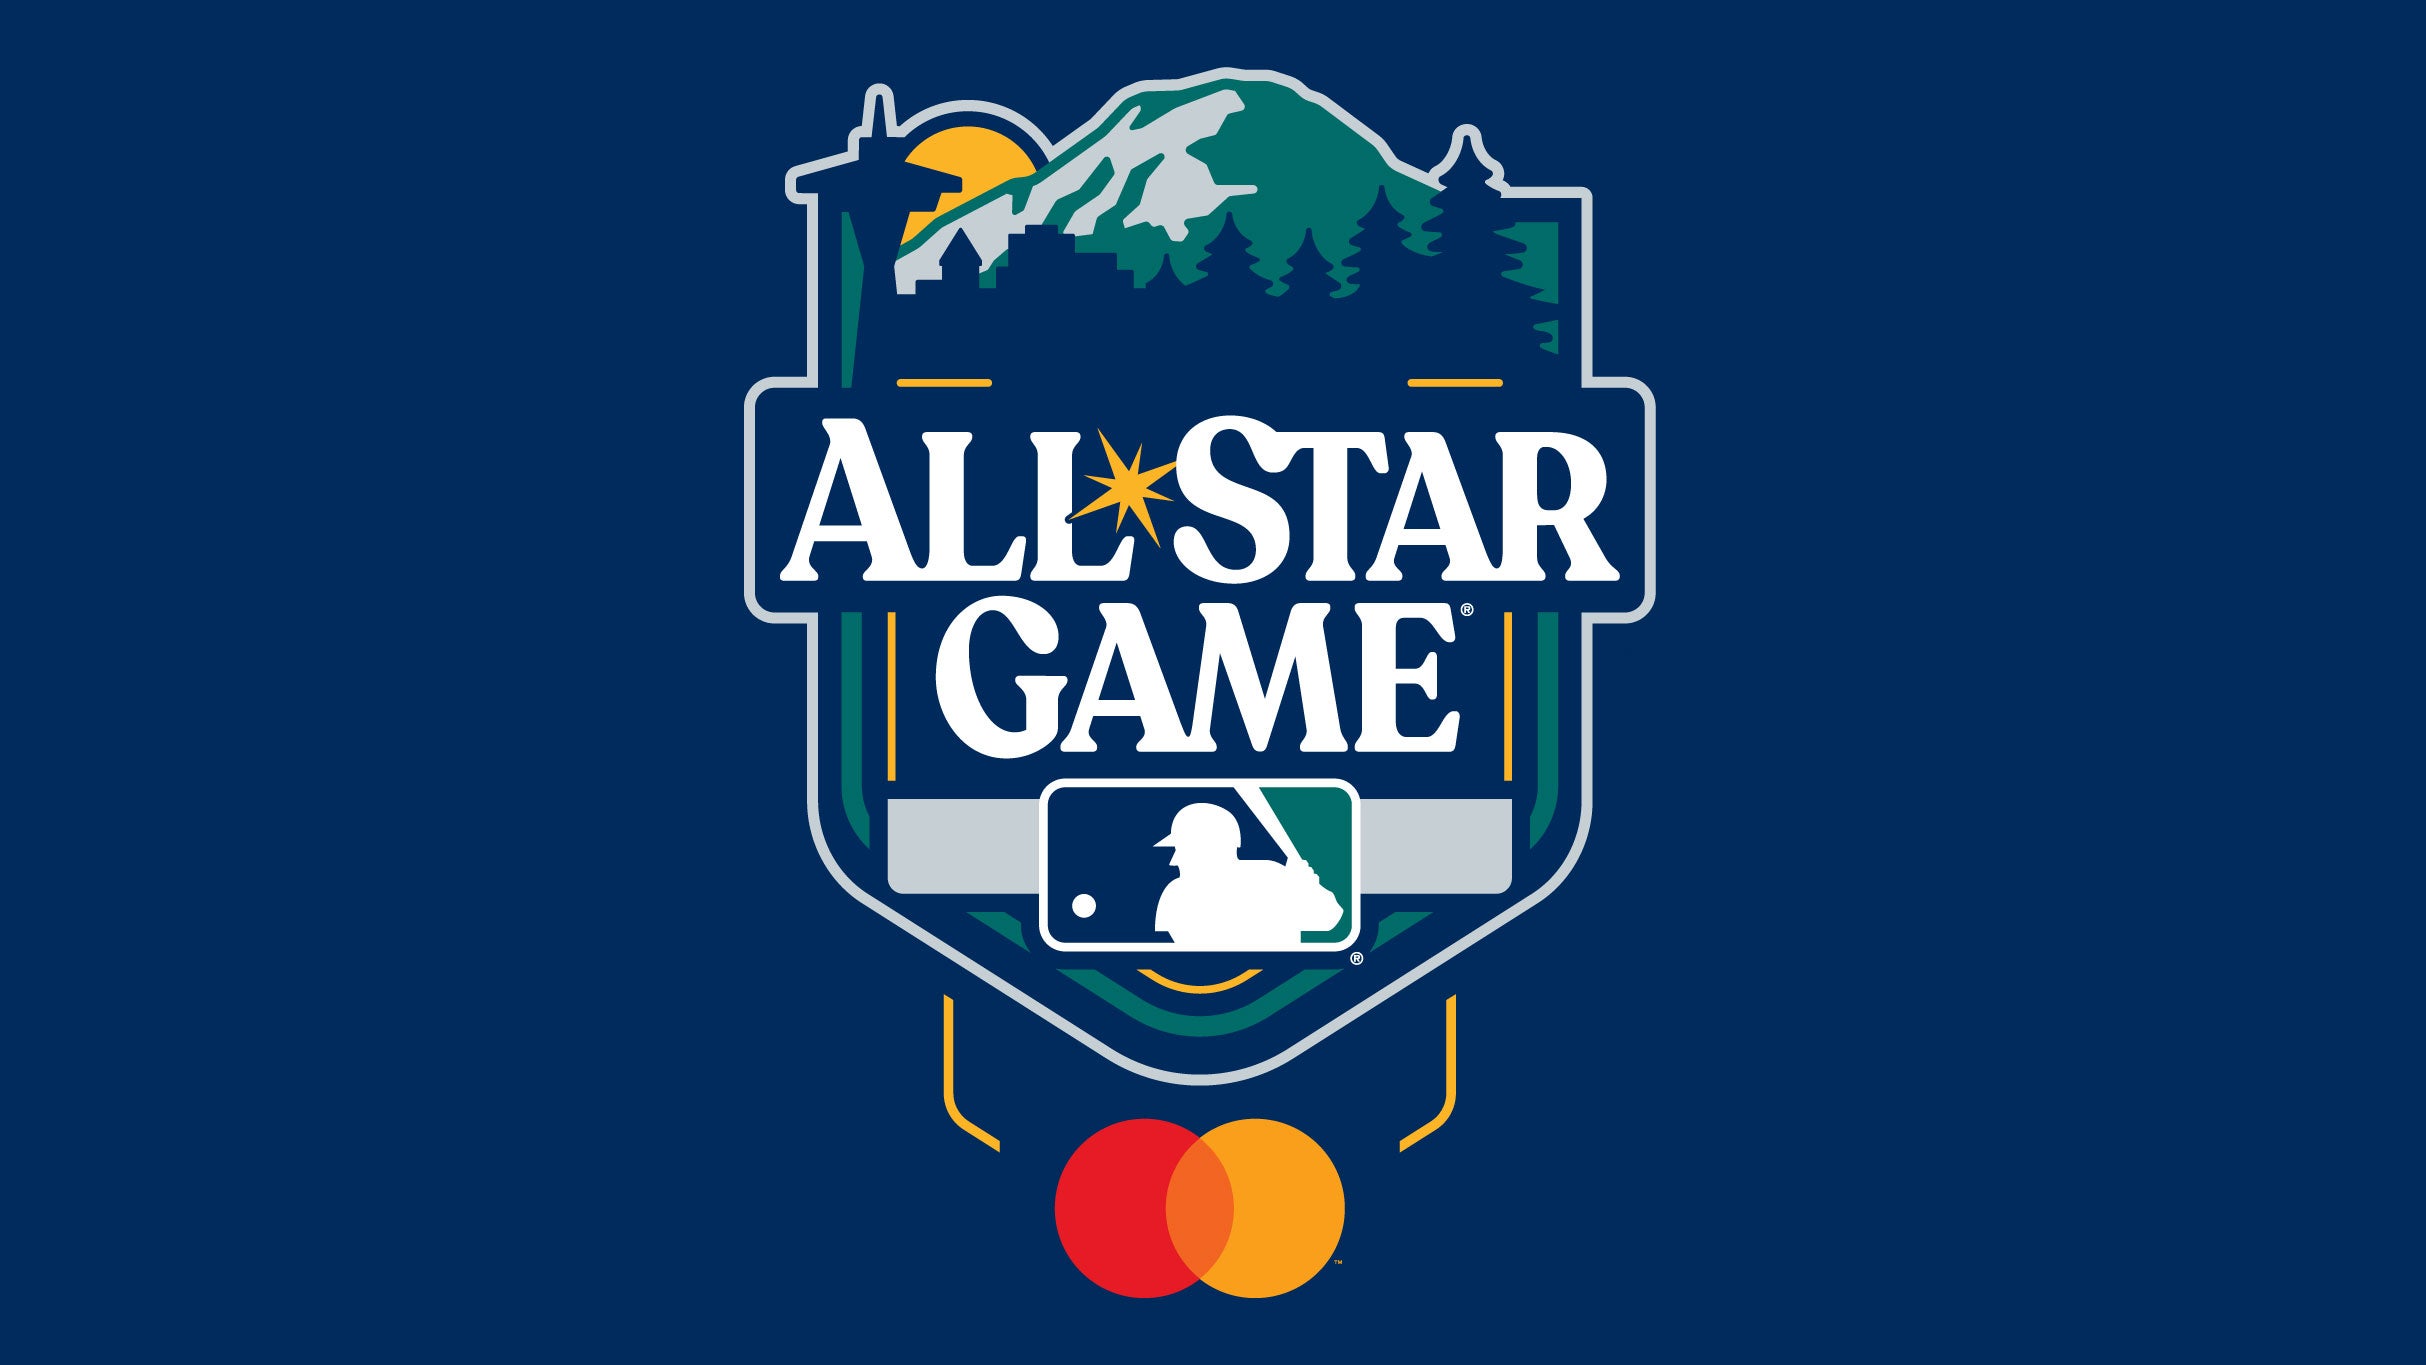 MLB All Star Game at Globe Life Field – Arlington, TX